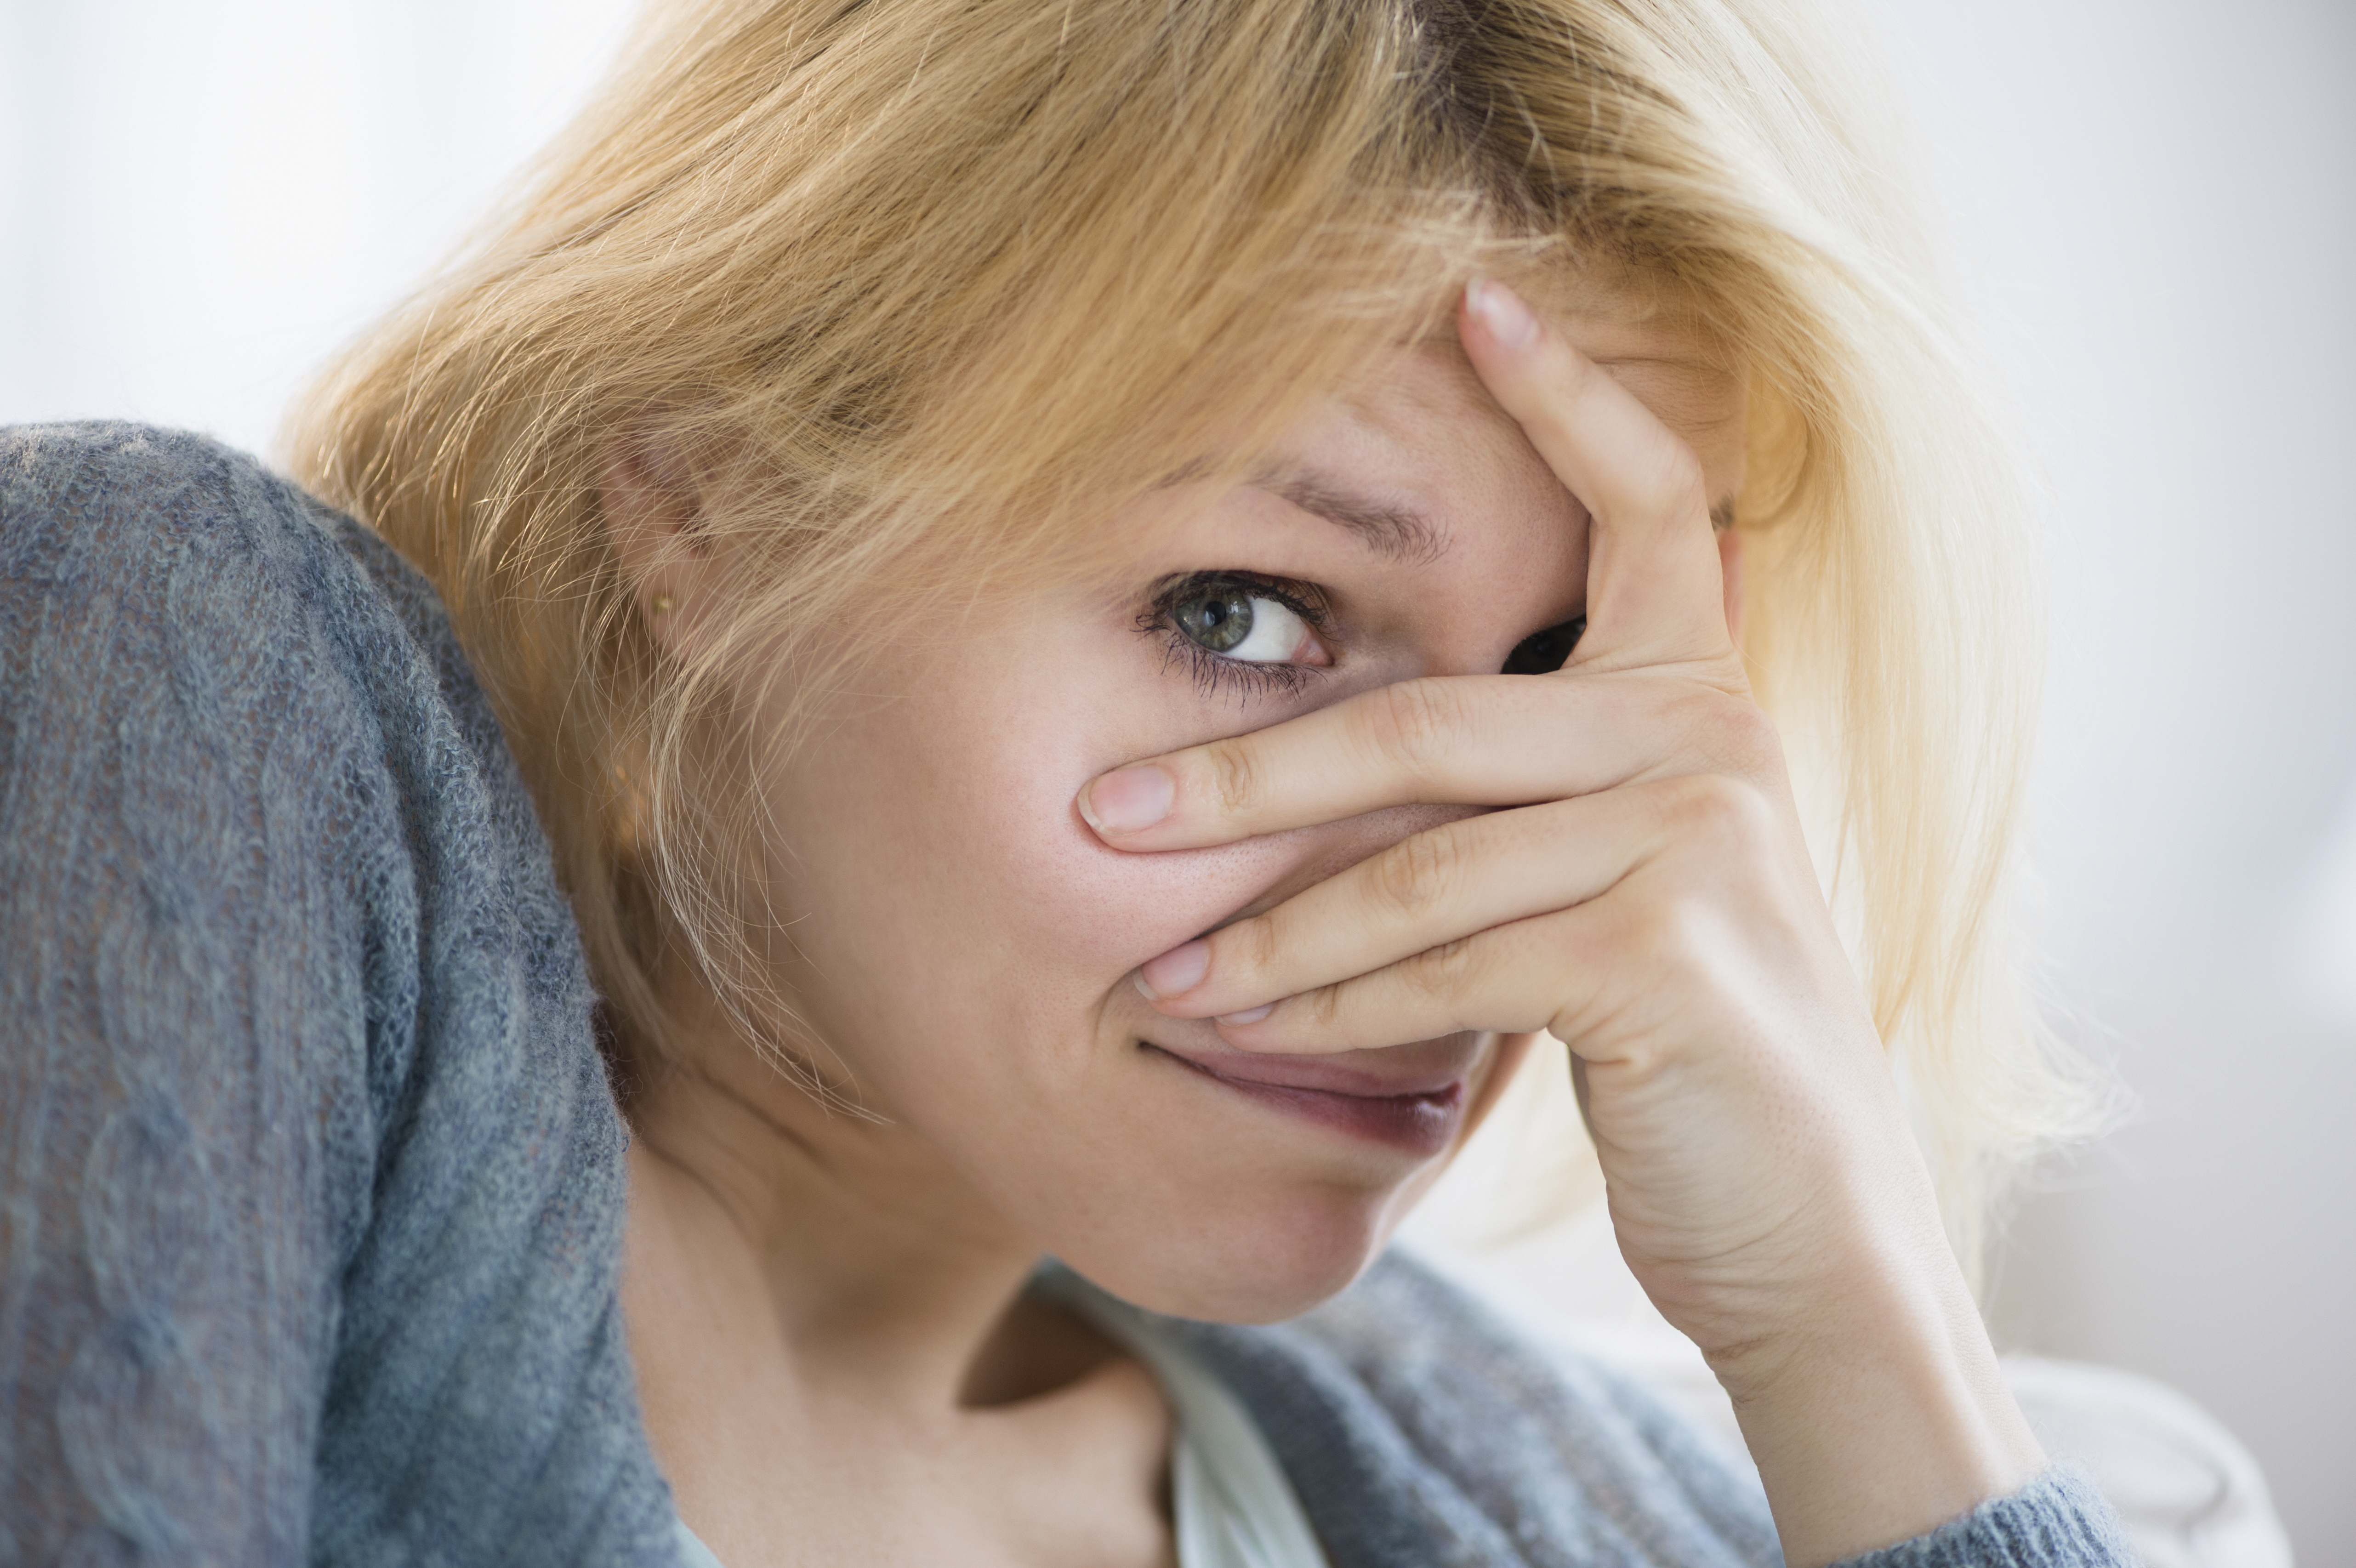 Une femme blonde troublée qui cache la moitié de son visage avec une main | Source : Getty Images